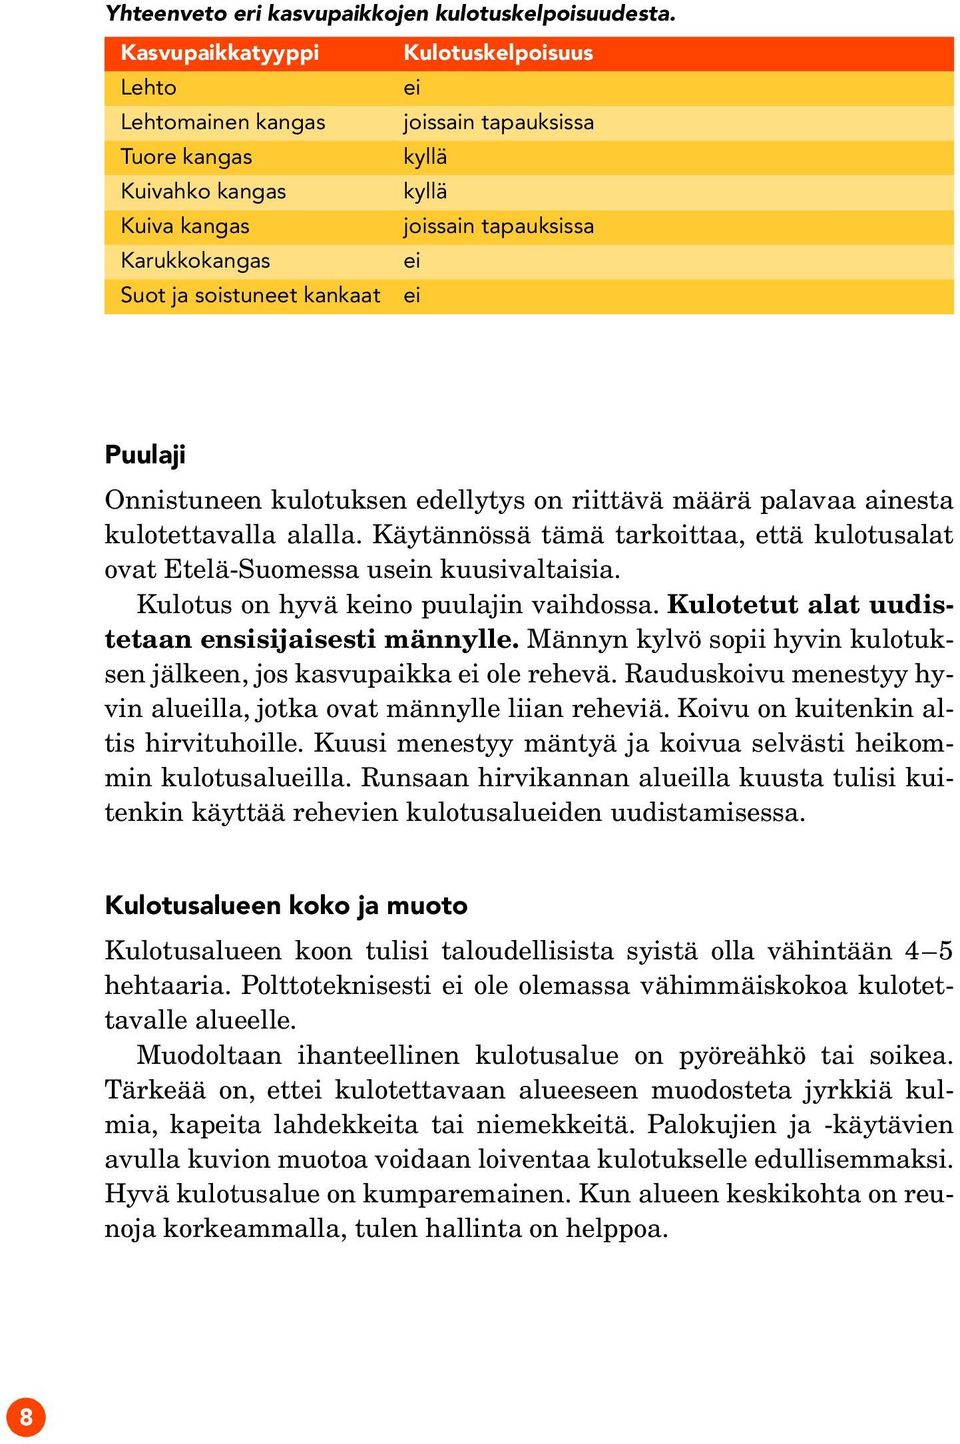 kankaat ei Puulaji Onnistuneen kulotuksen edellytys on riittävä määrä palavaa ainesta kulotettavalla alalla. Käytännössä tämä tarkoittaa, että kulotusalat ovat Etelä-Suomessa usein kuusivaltaisia.